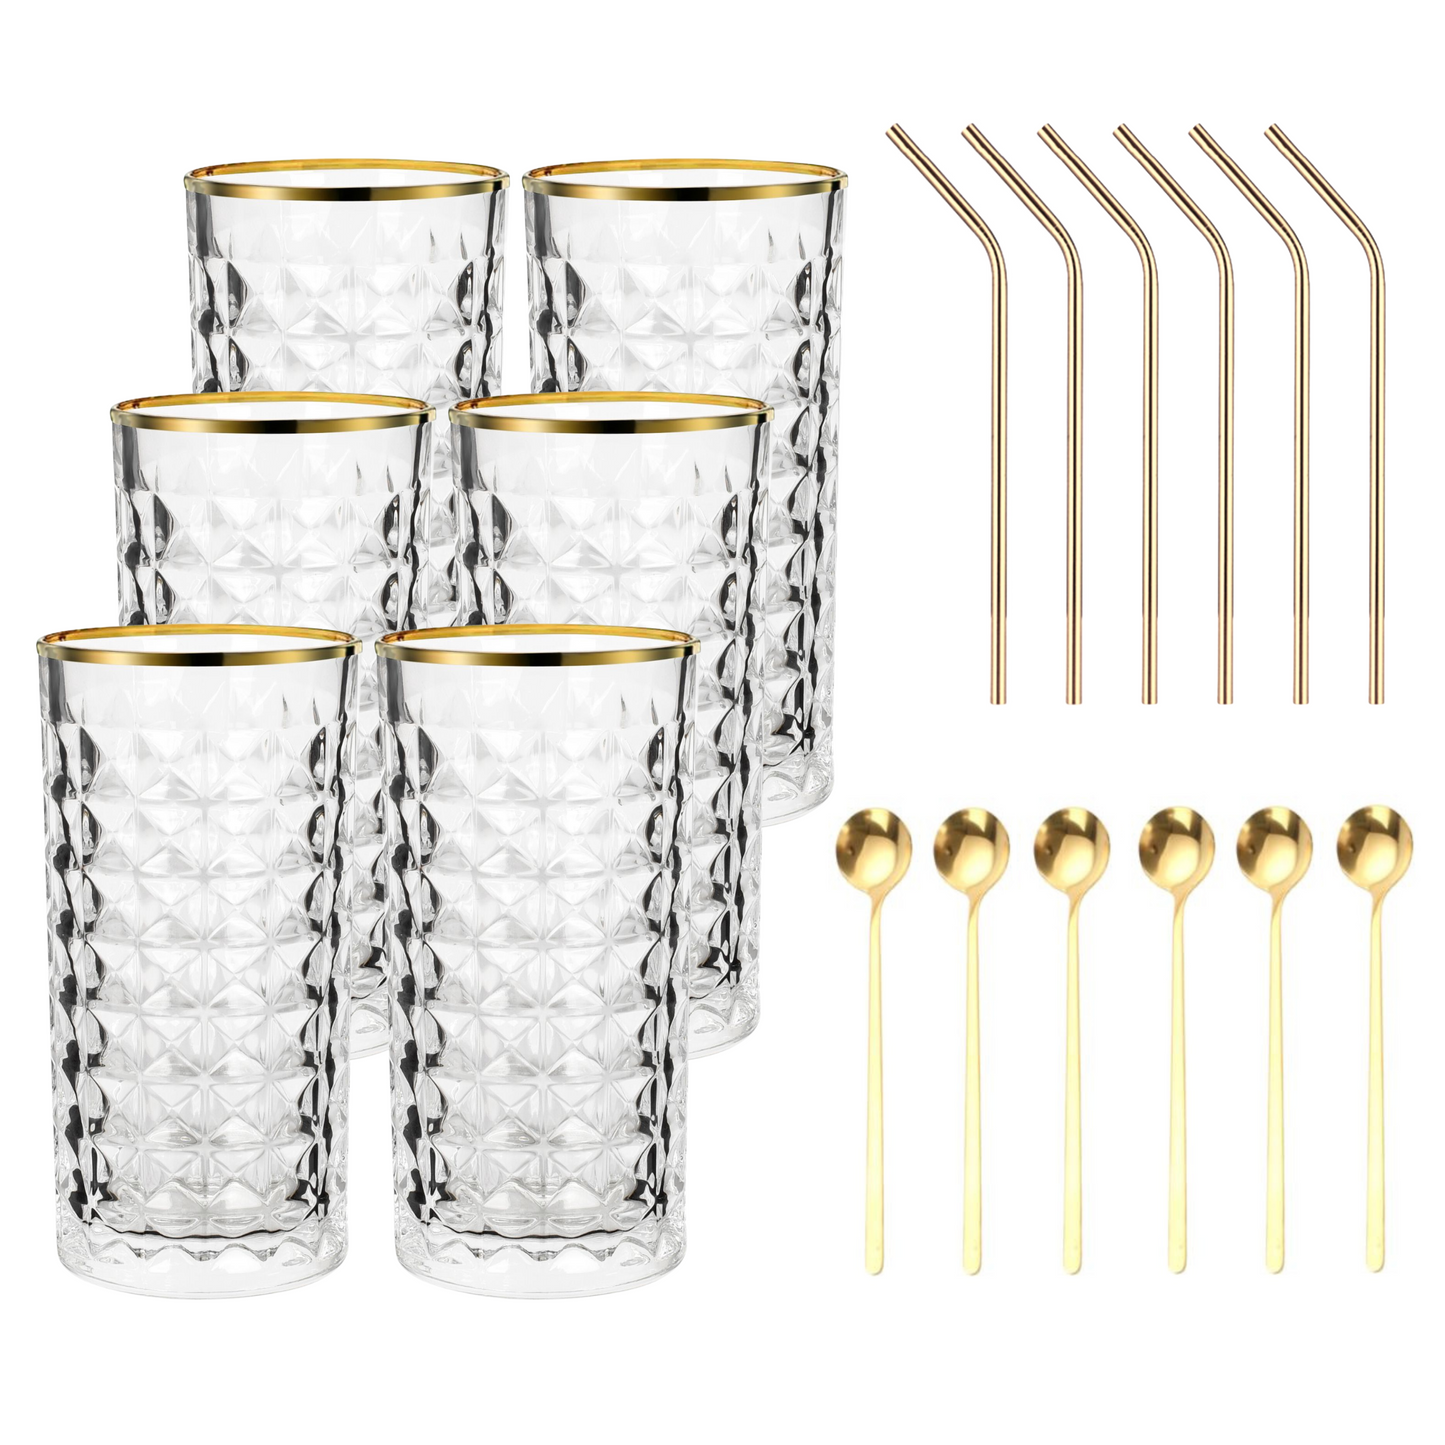 Set Luxus Kristall Latte Macchiato Gläser mit Goldrand 330ml Trinkgläser 6er Set "Luxe" mit goldenen Latte Macchiato Löffeln und goldenen Strohhalmen aus Edelstahl